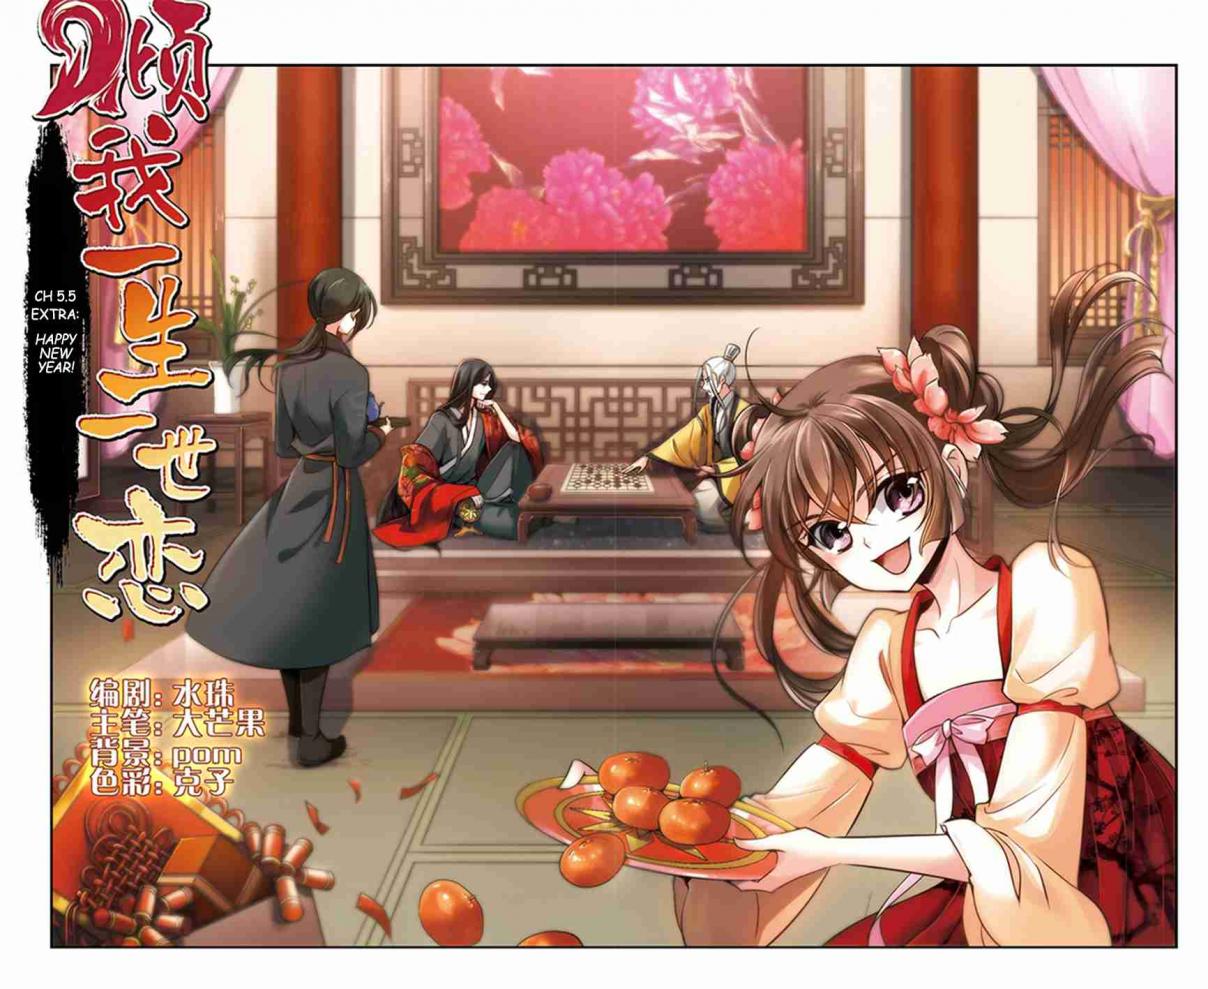 Qing Wo Yi Sheng Yi Shi Lian Ch. 5.5 Extra Happy New Year!